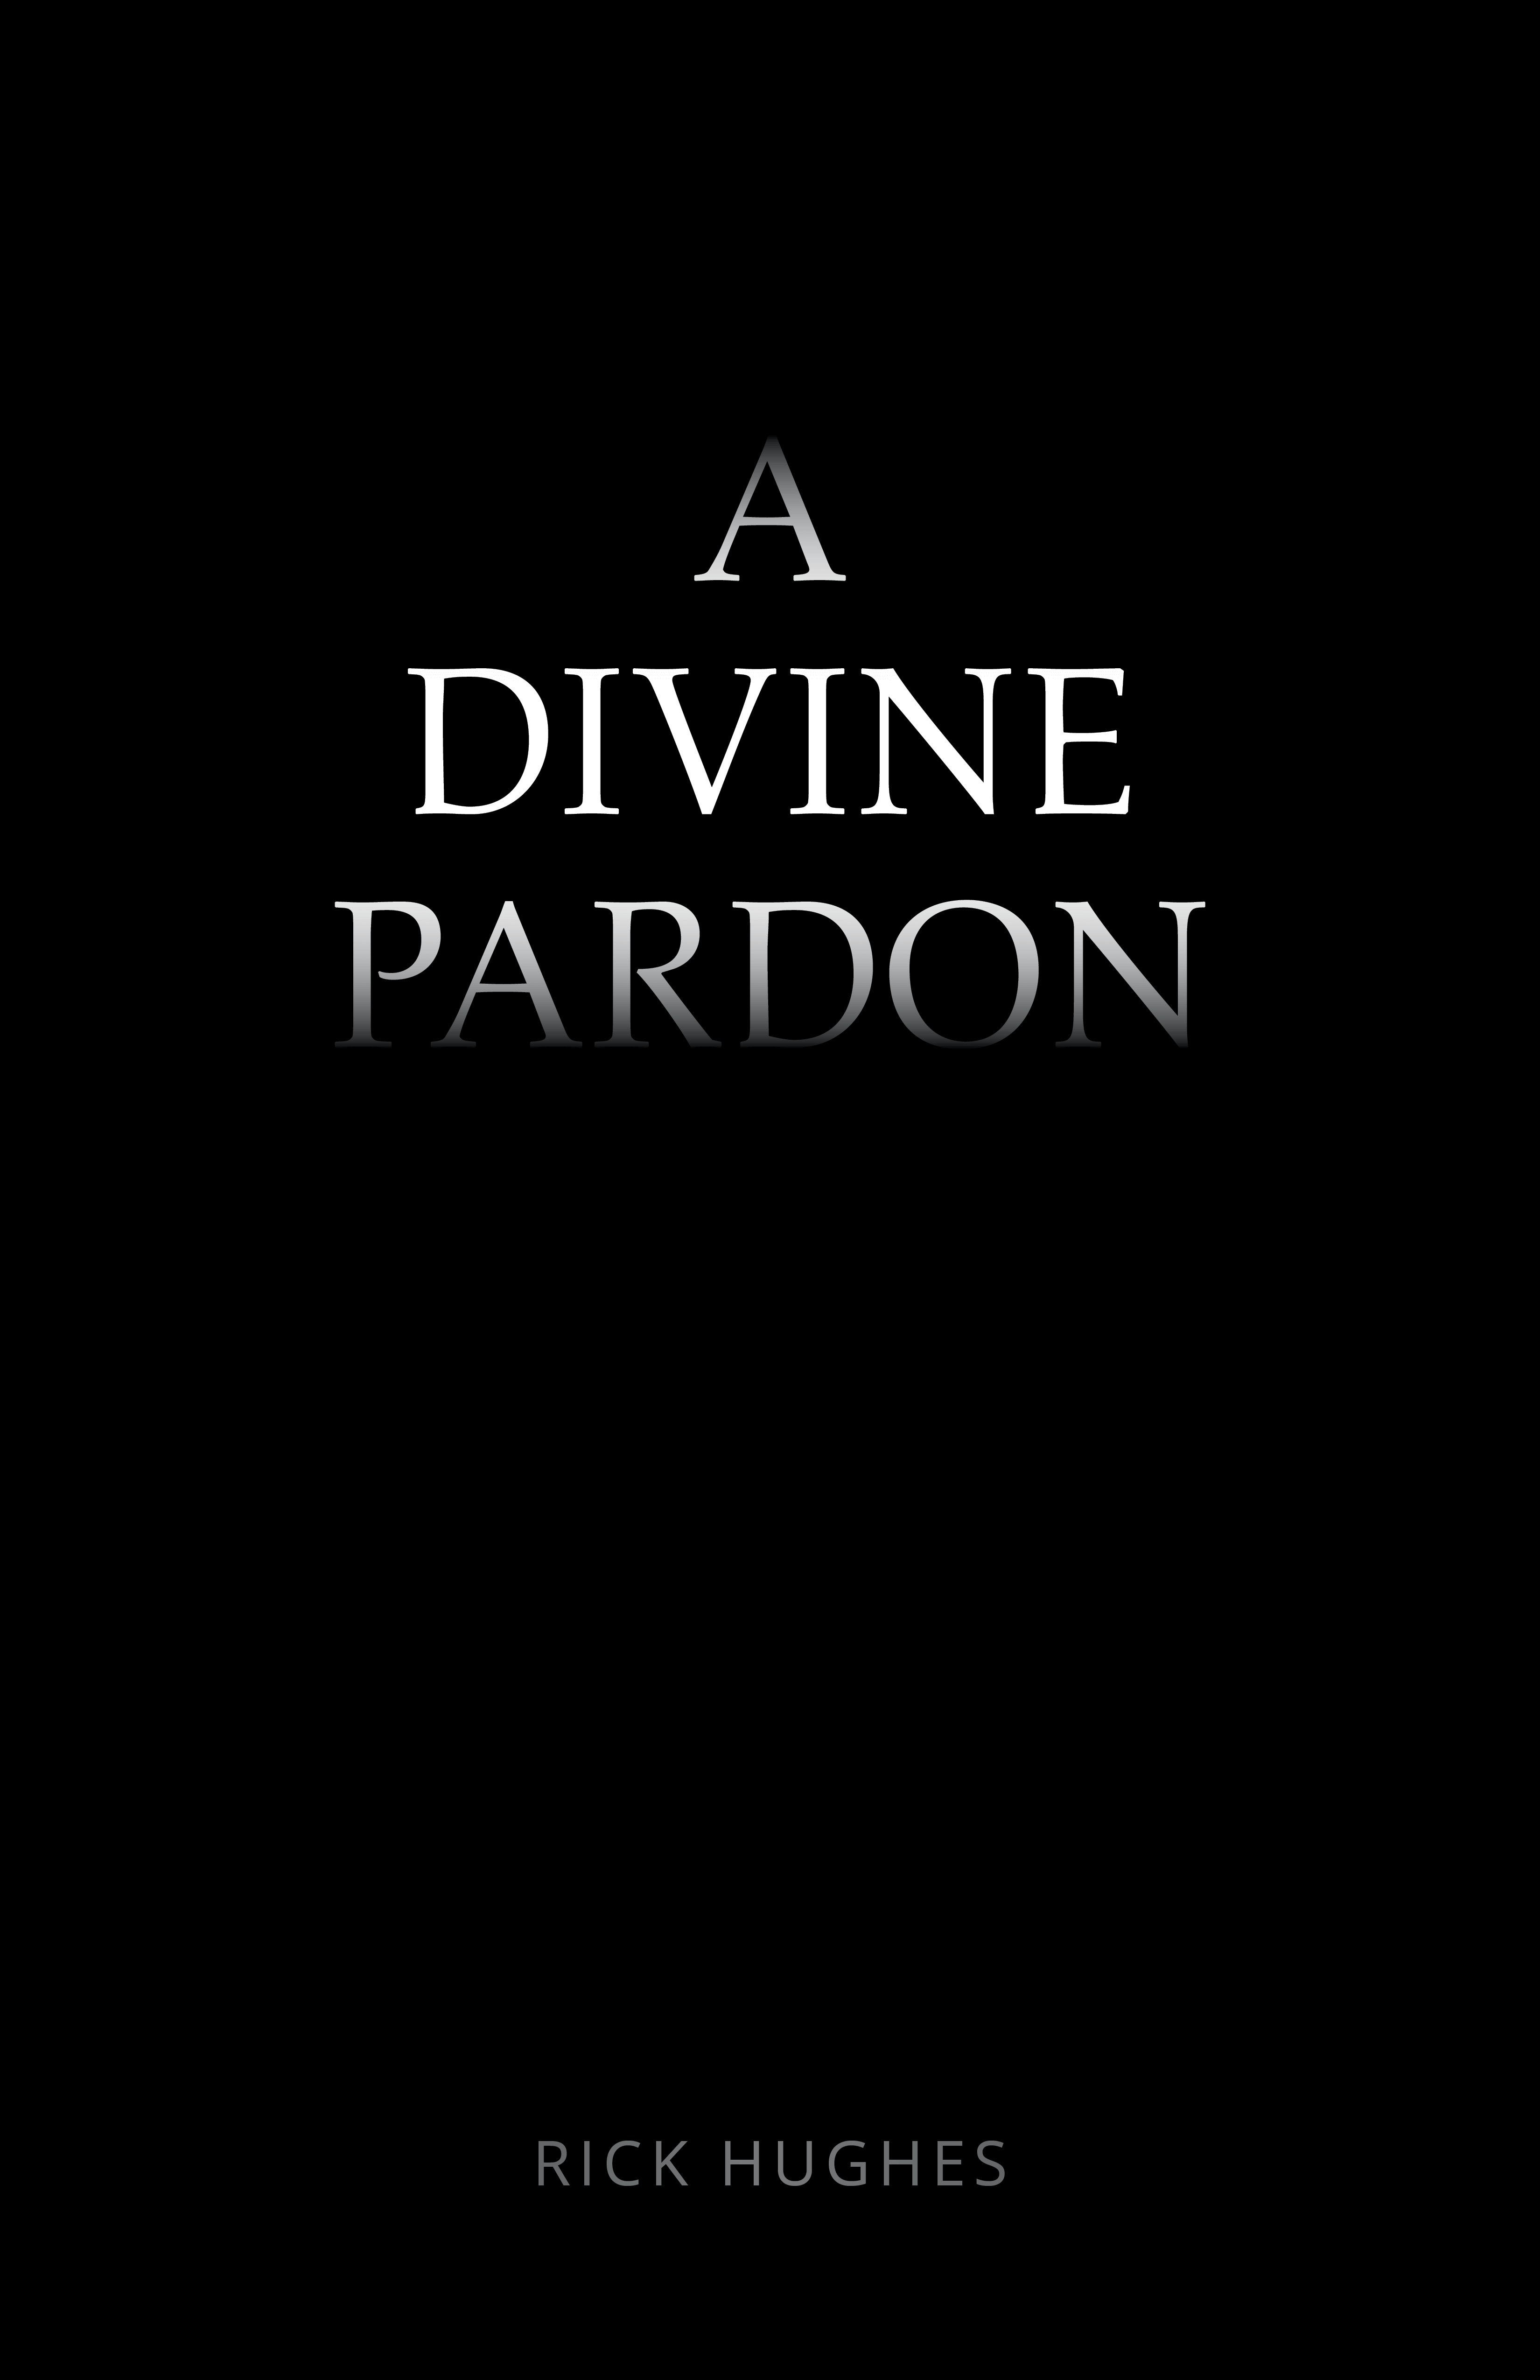 100a_divine_pardon_book_cover